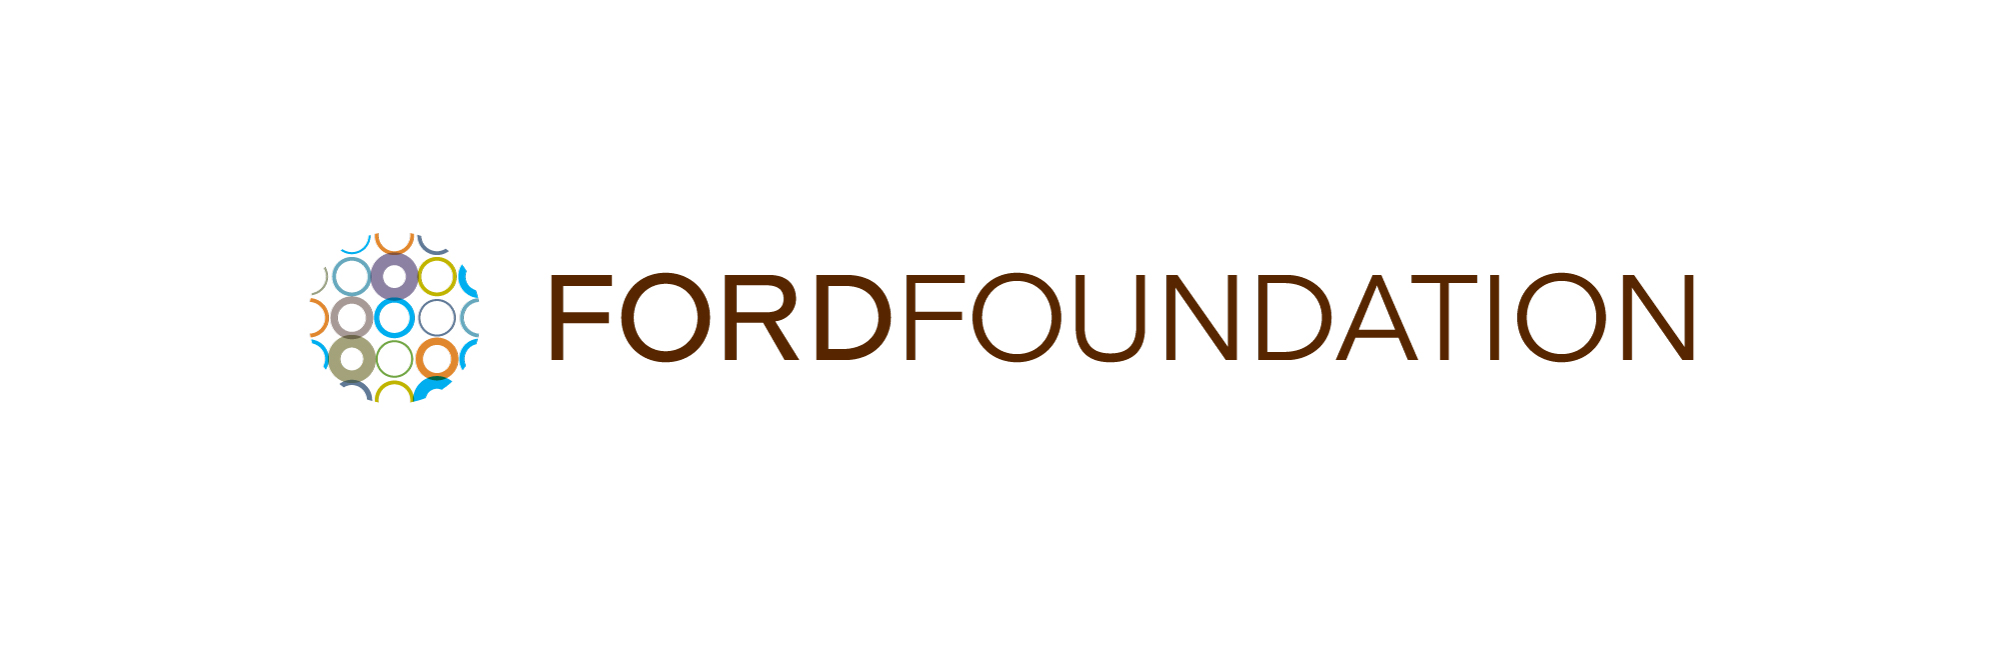 ford-foundation.jpg